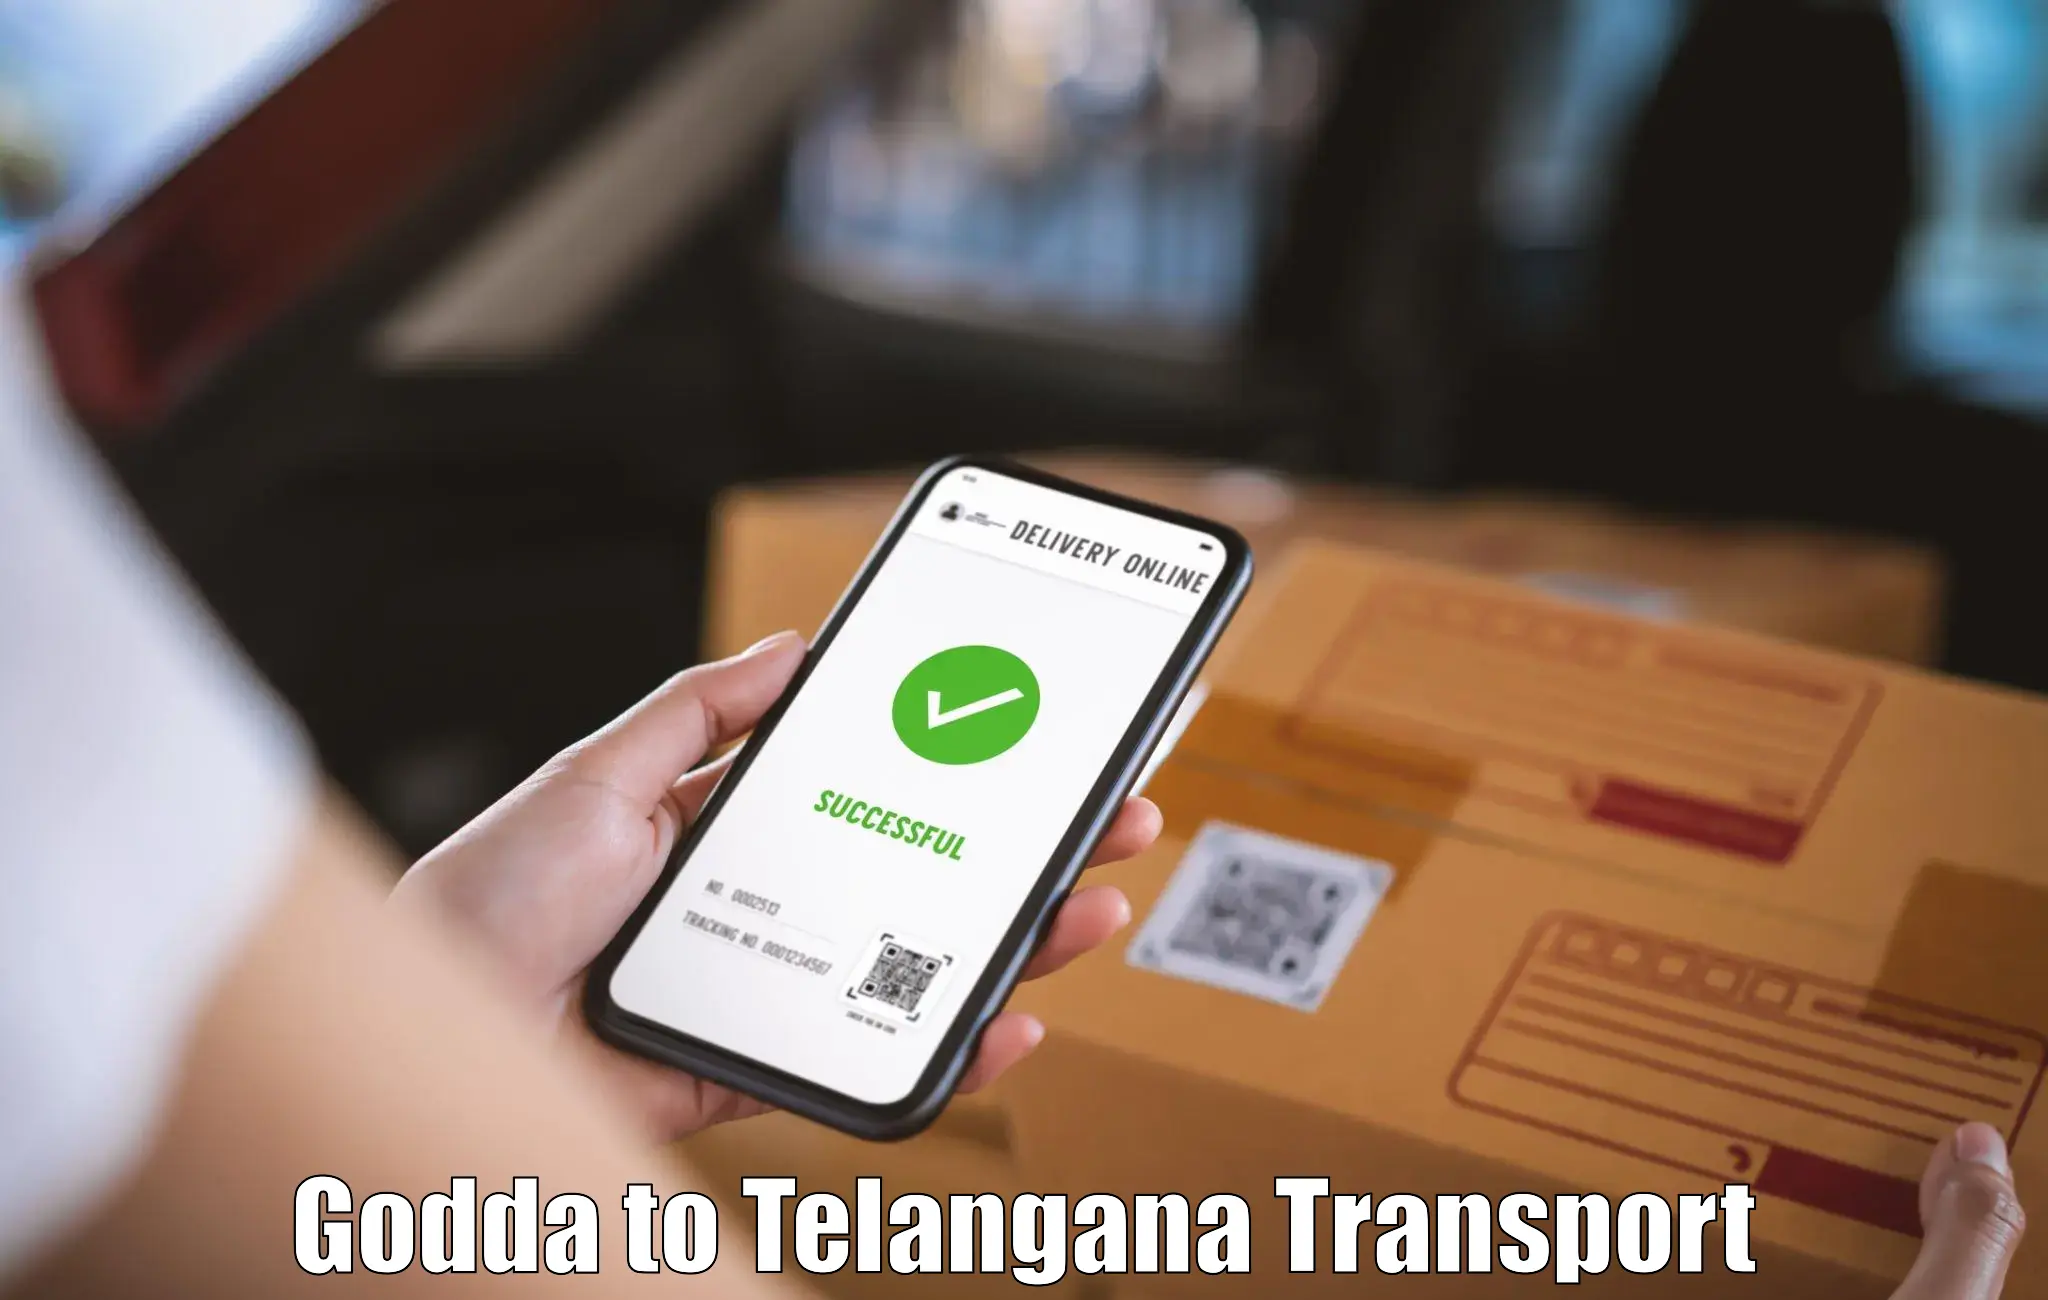 India truck logistics services Godda to Mominpet